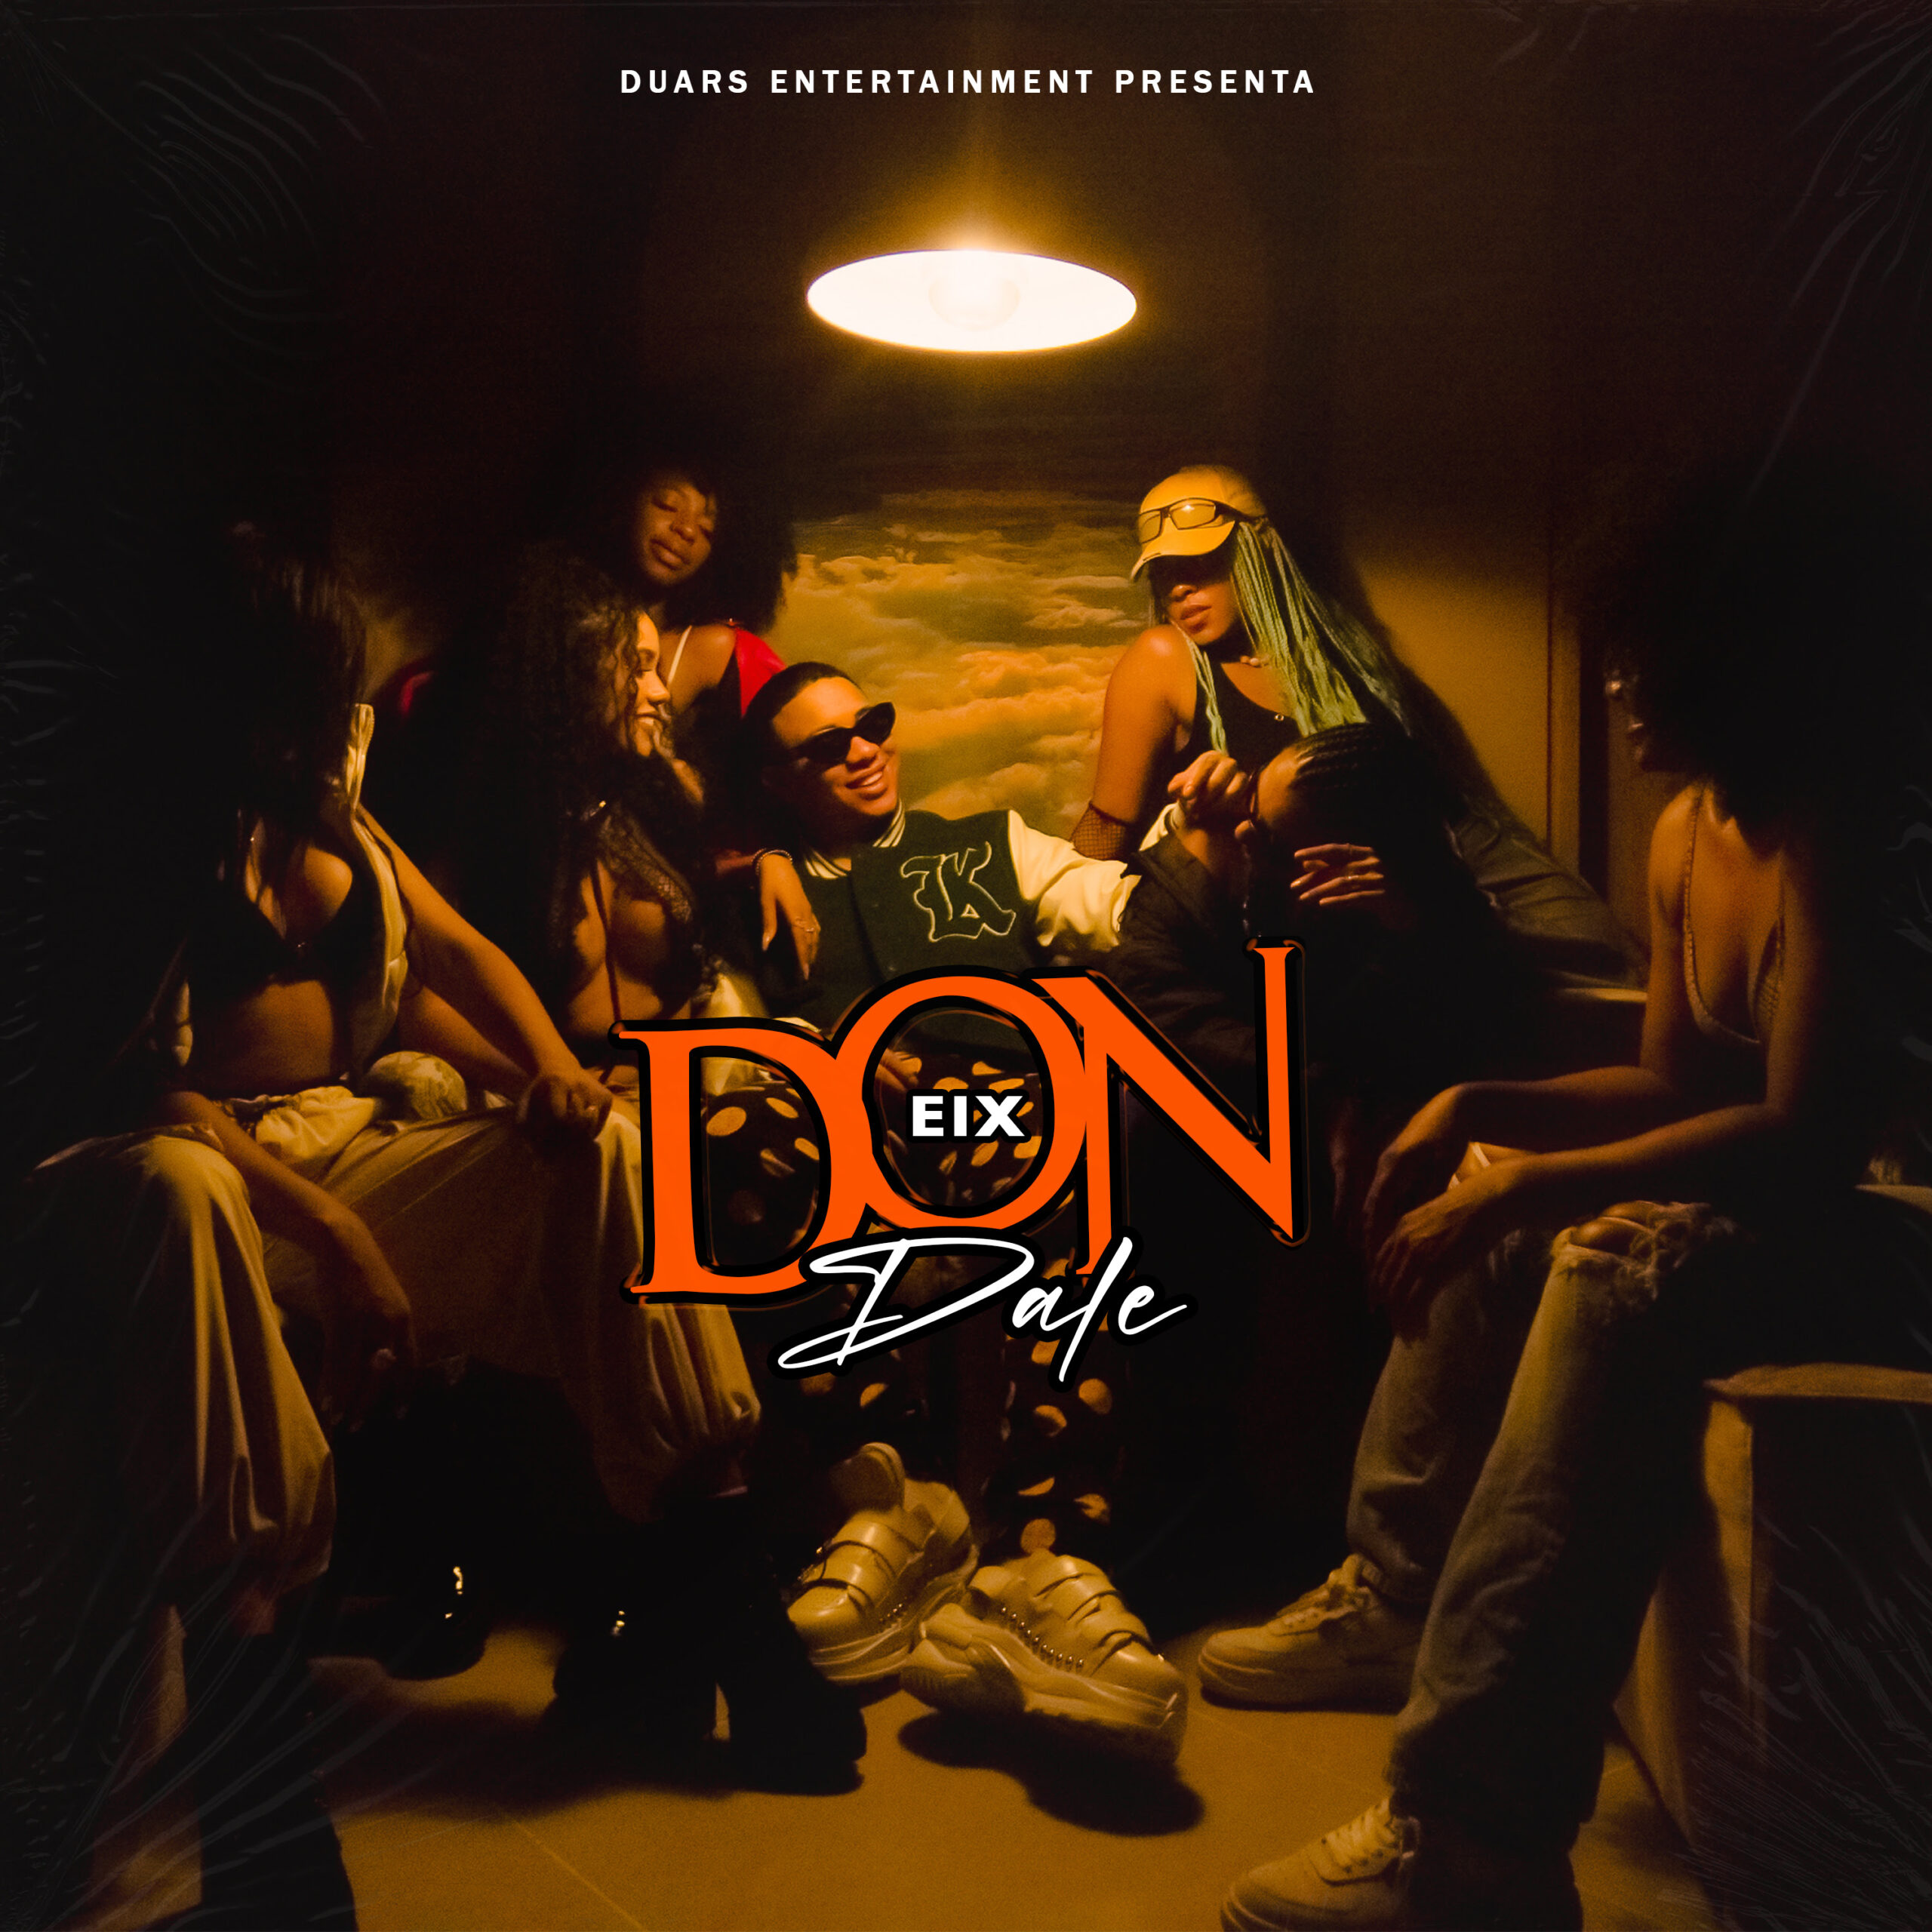 El artista de Puerto Rico Eix lanza su nueva canción ‘Don Dale’